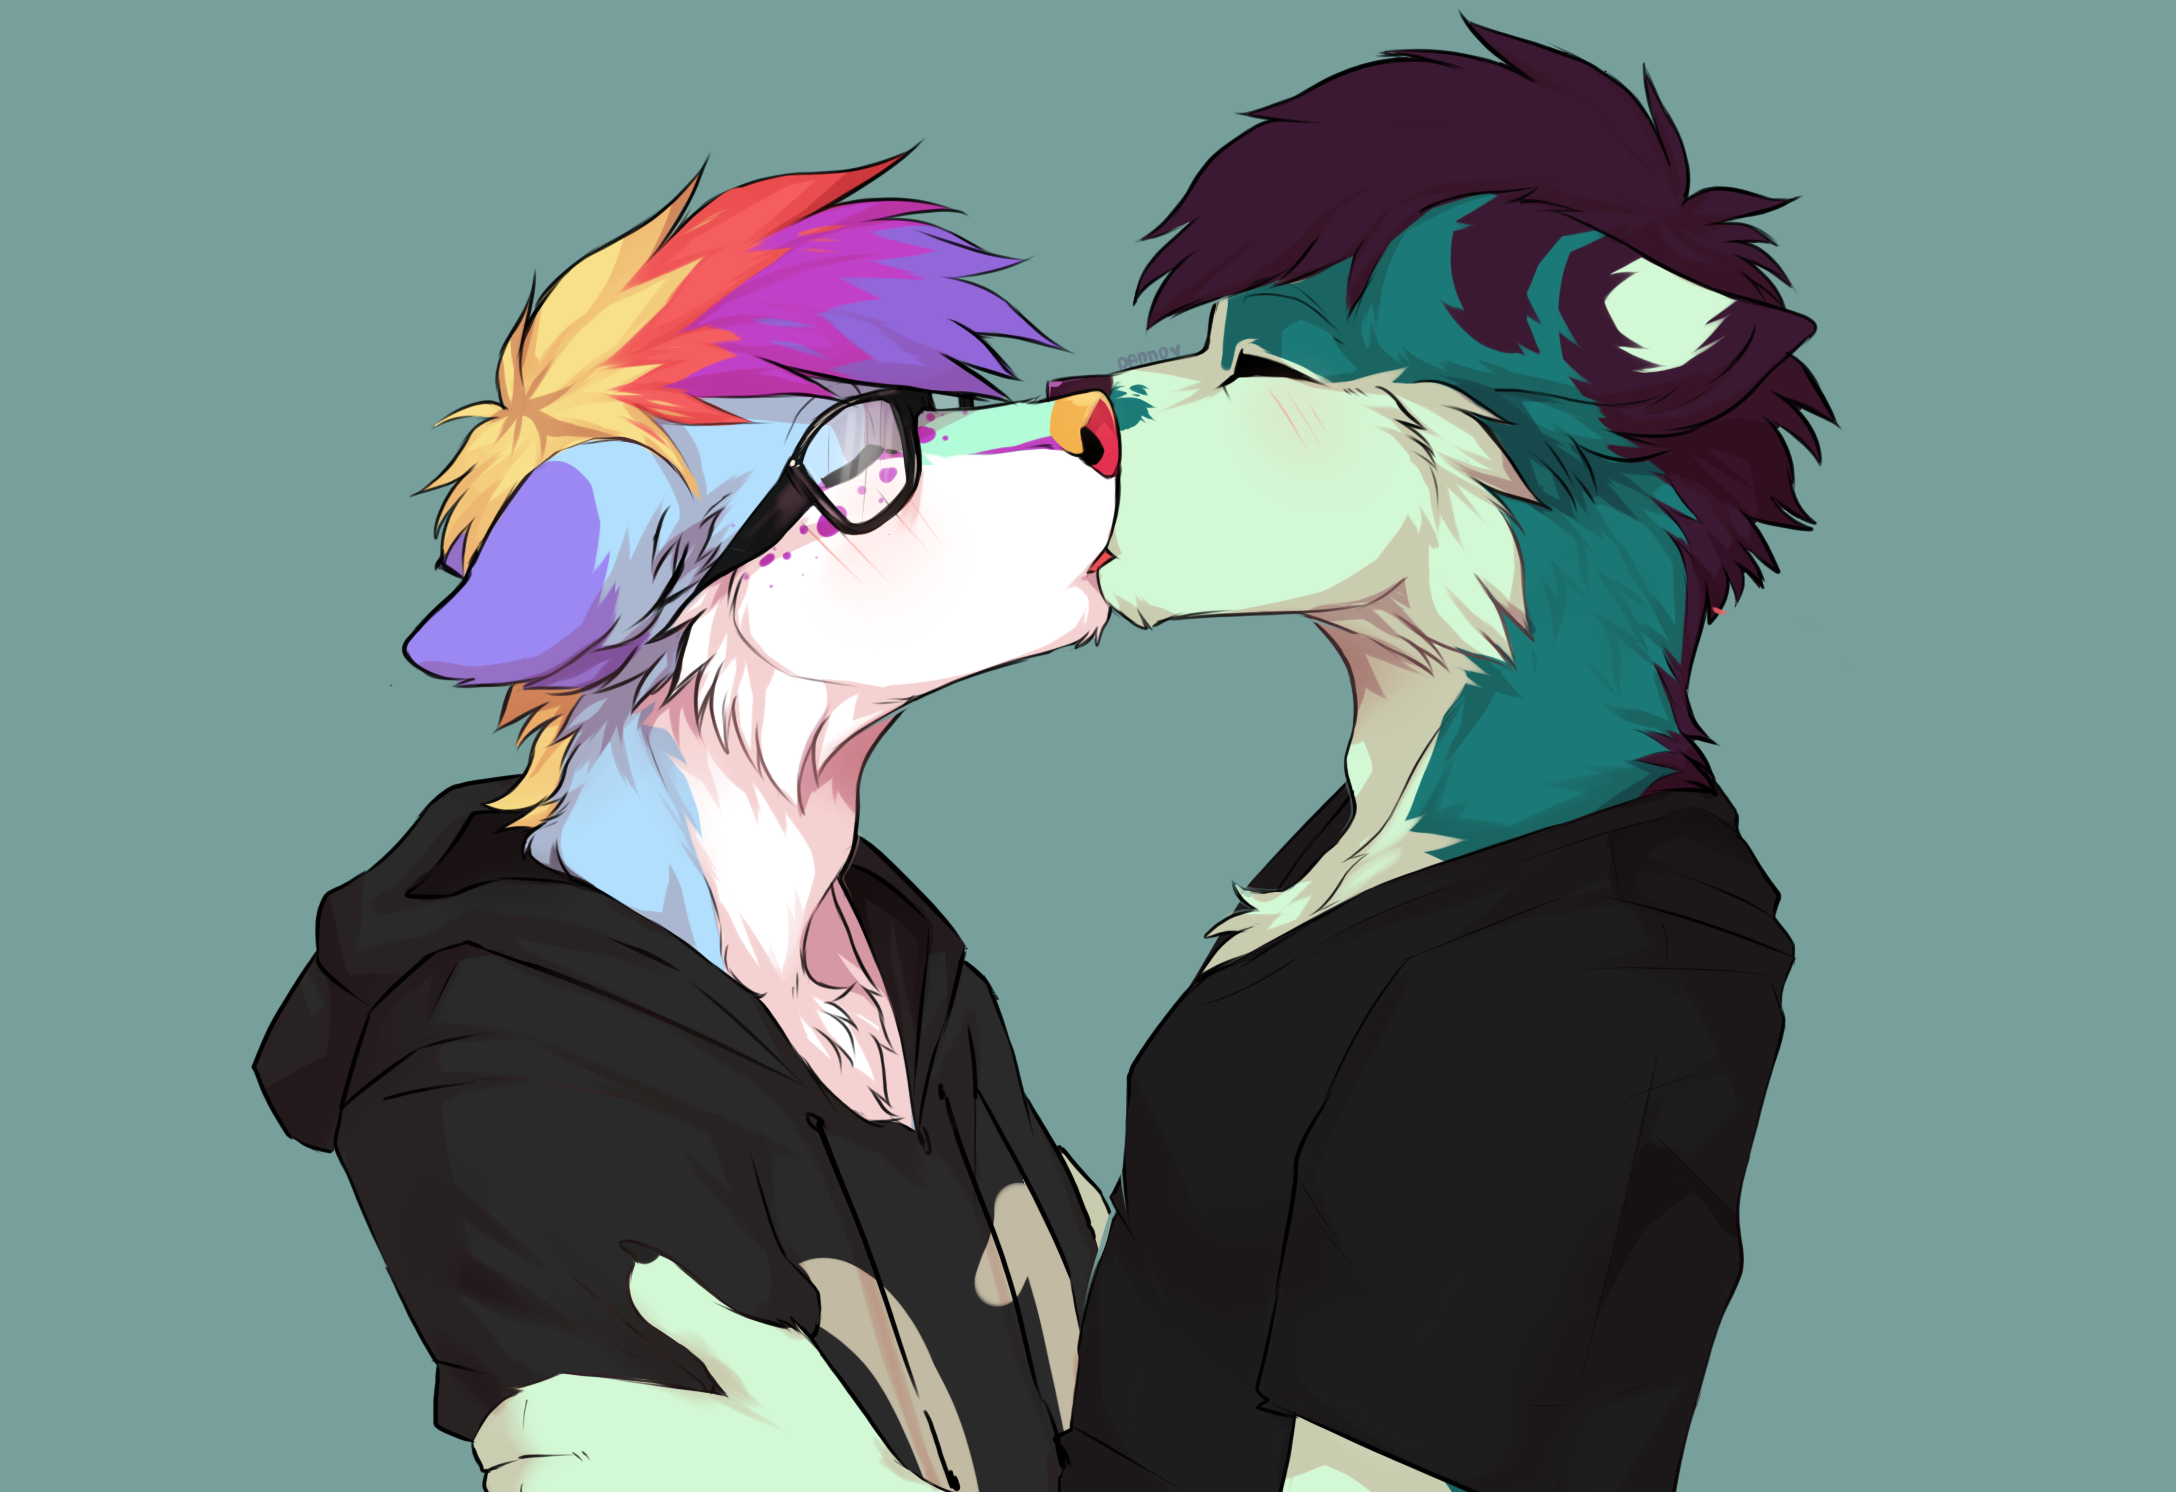 Furry gay kissing